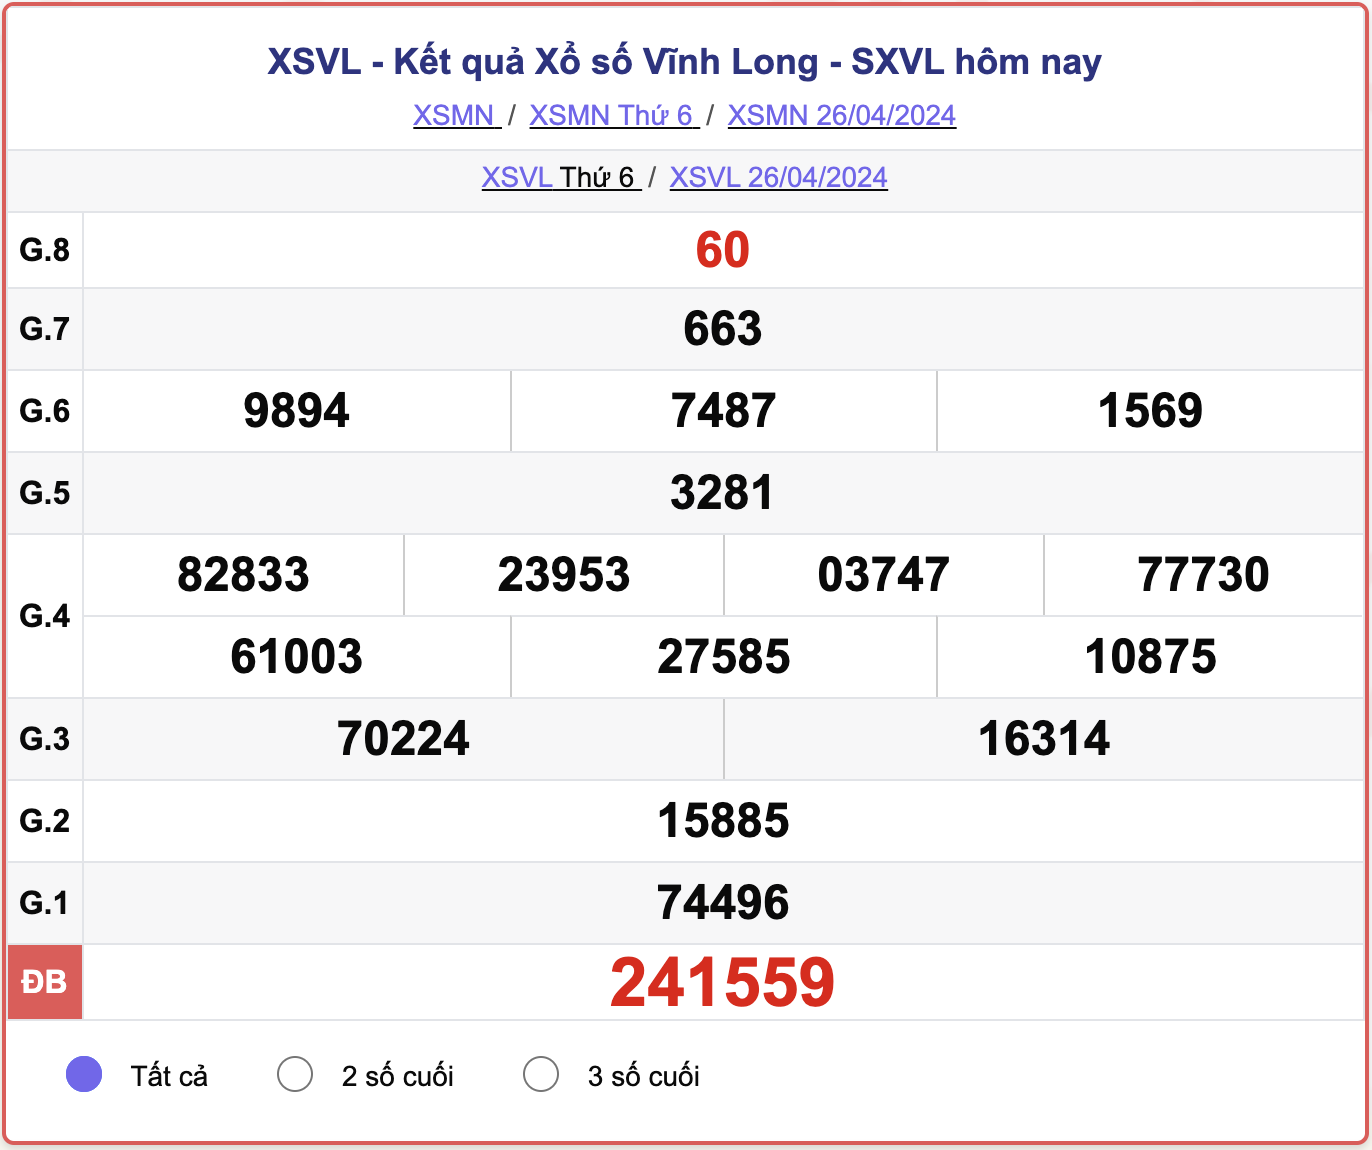 XSVL thứ Sáu, kết quả xổ số Vĩnh Long ngày 26/4/2024.